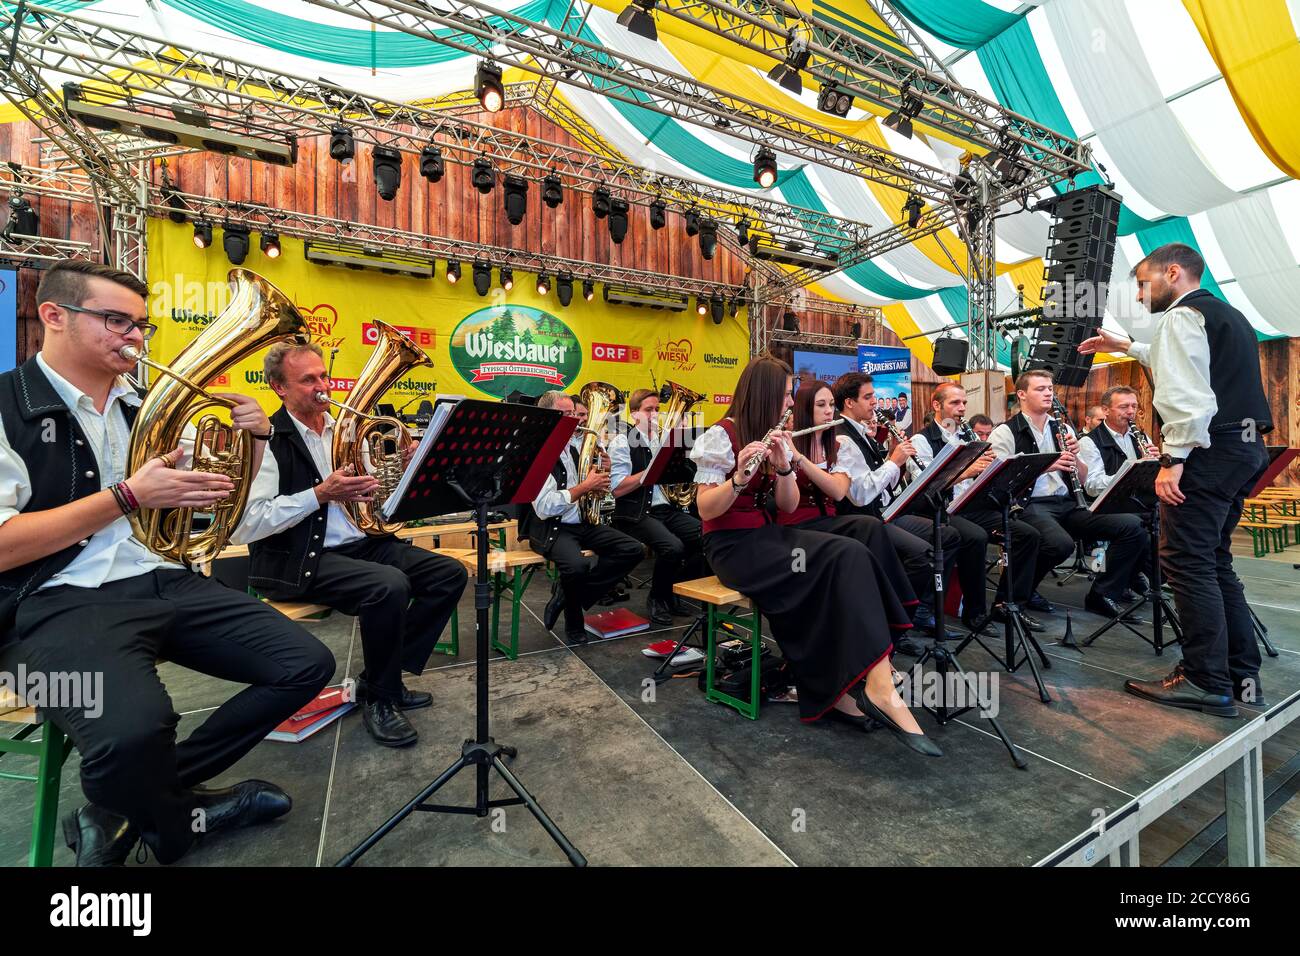 Gruppo musicale che si esibisce sul palco durante l'Oktoberfest - famoso festival annuale della birra, noto anche come Wiener Wiesn a Vienna, Austria. Foto Stock